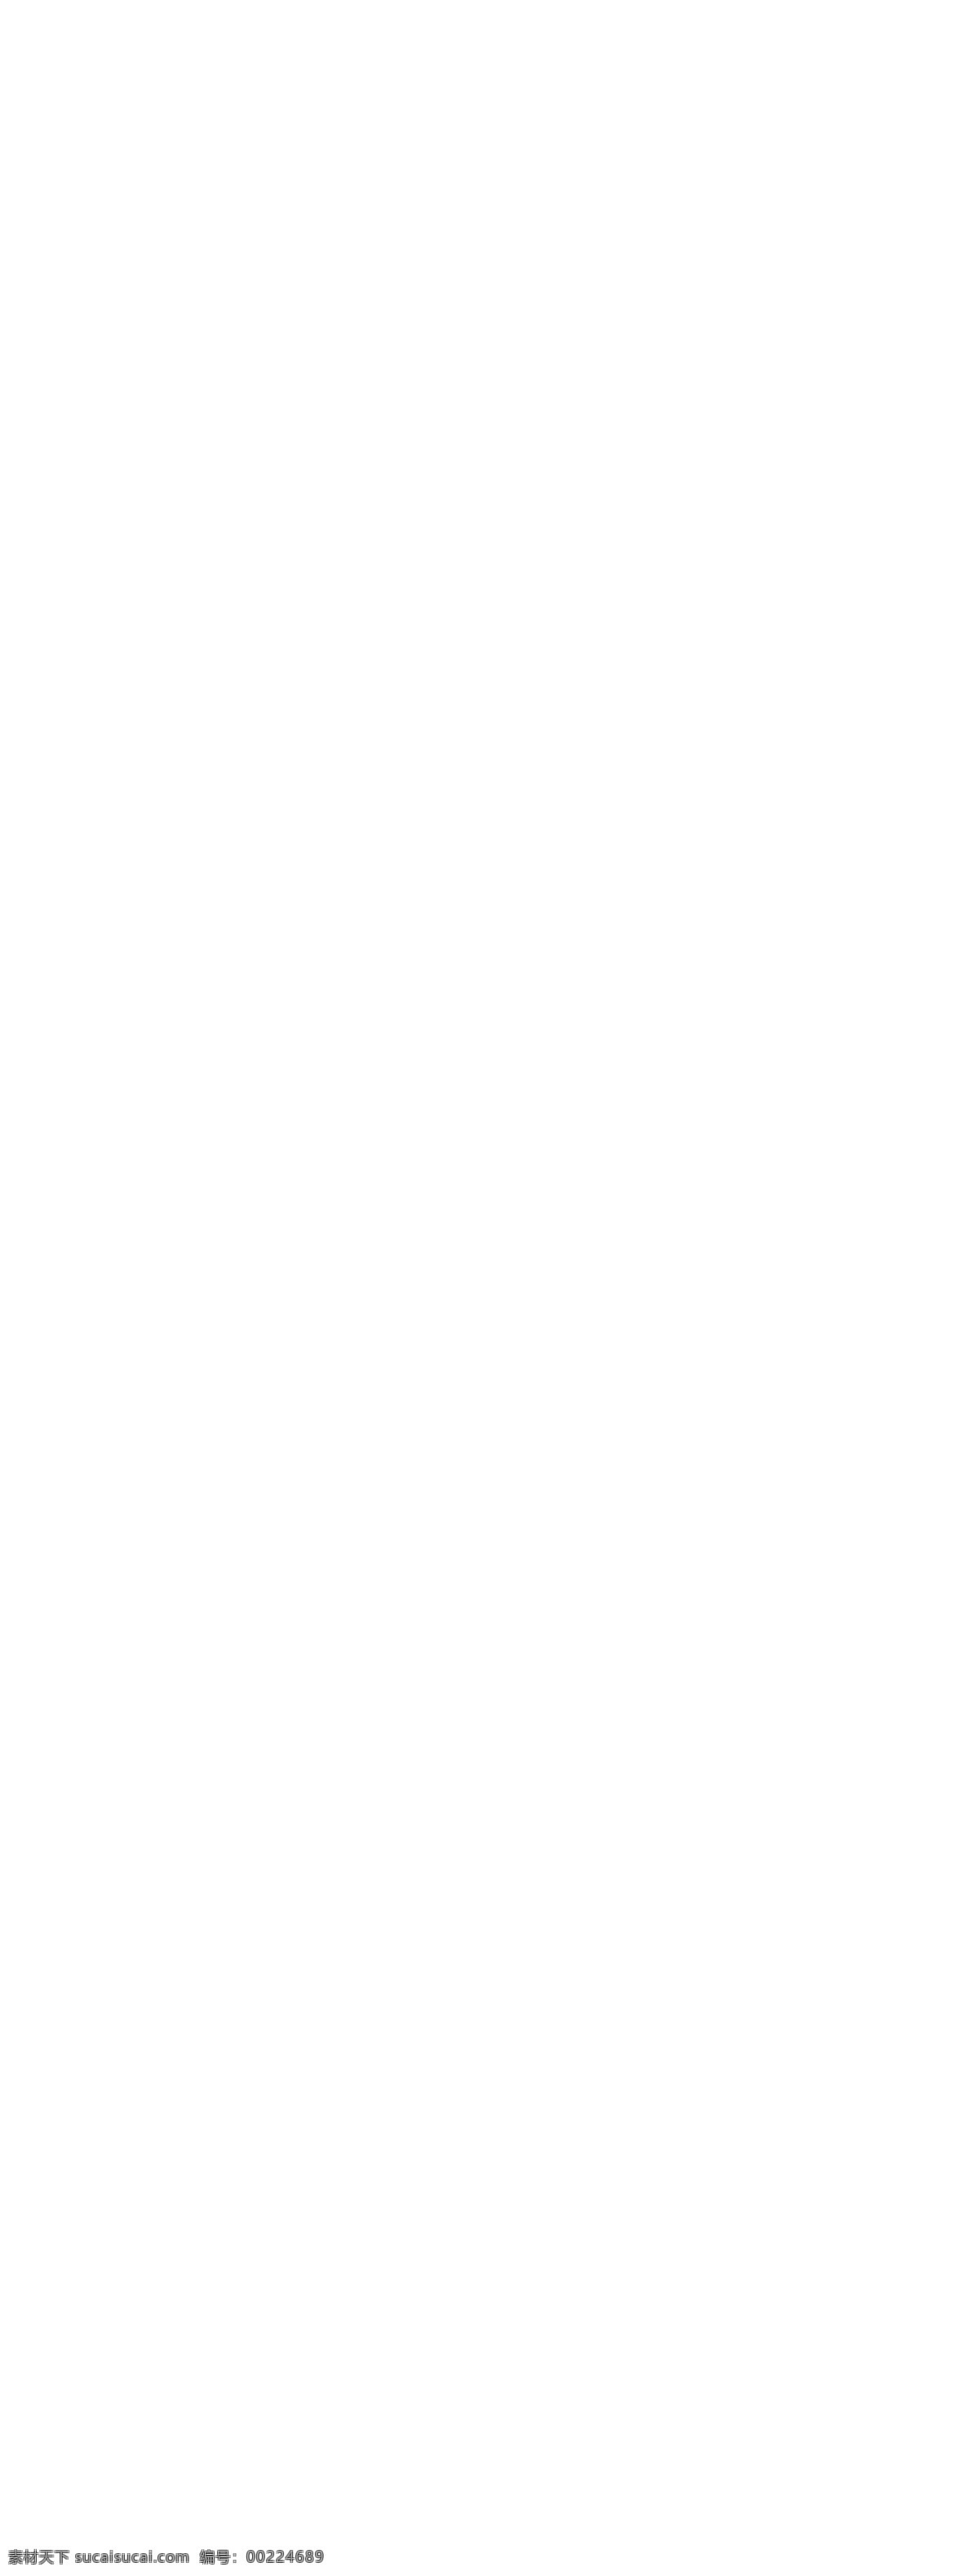 2018 粉 紫色 愚人节 电商 淘宝 首页 模板 优惠券 天猫 促销 2018年 电商淘宝首页 模板设计 愚人劫 食品 甜品 满减促销 大促 四月 一日 吃货 节 棒棒糖 美食 通用模板